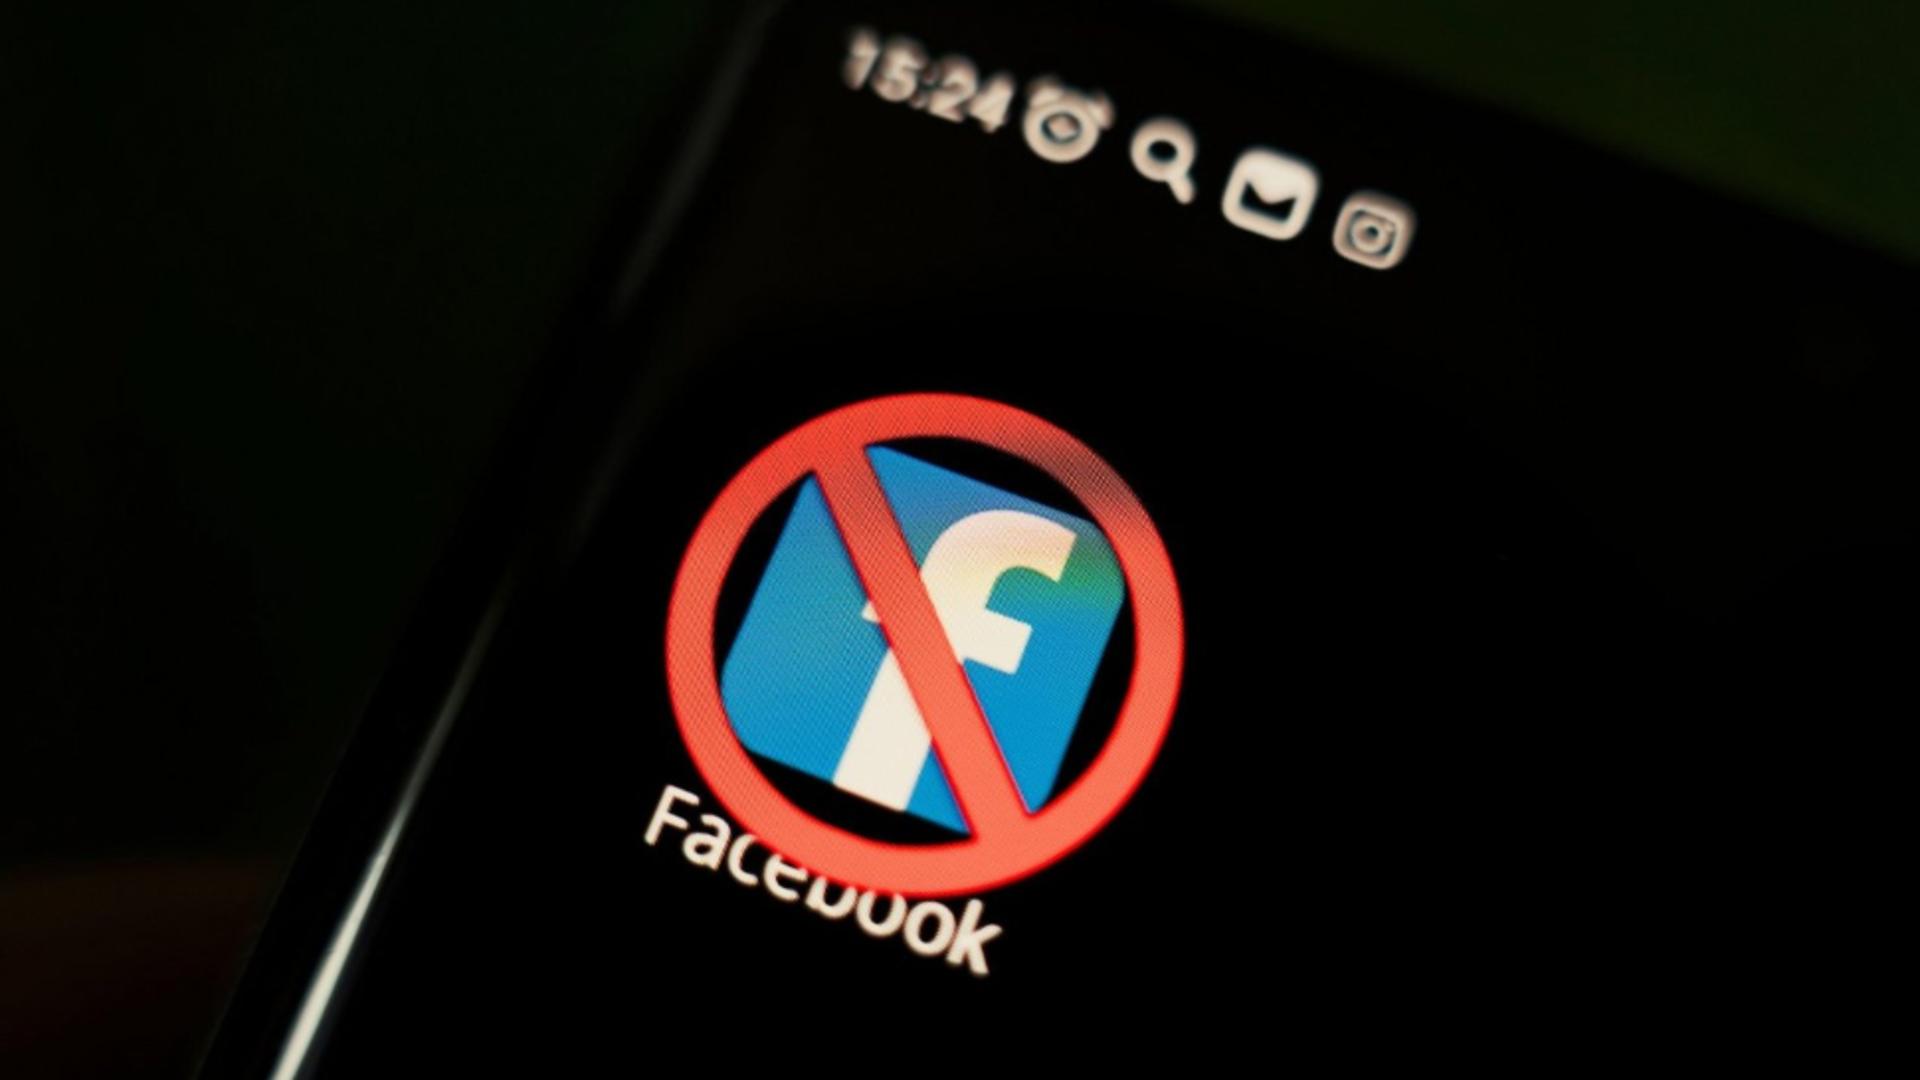 Cum poți raporta direct autorităților din România conținutul fals de pe Facebook sau TikTok. A fost lansată o nouă modalitate